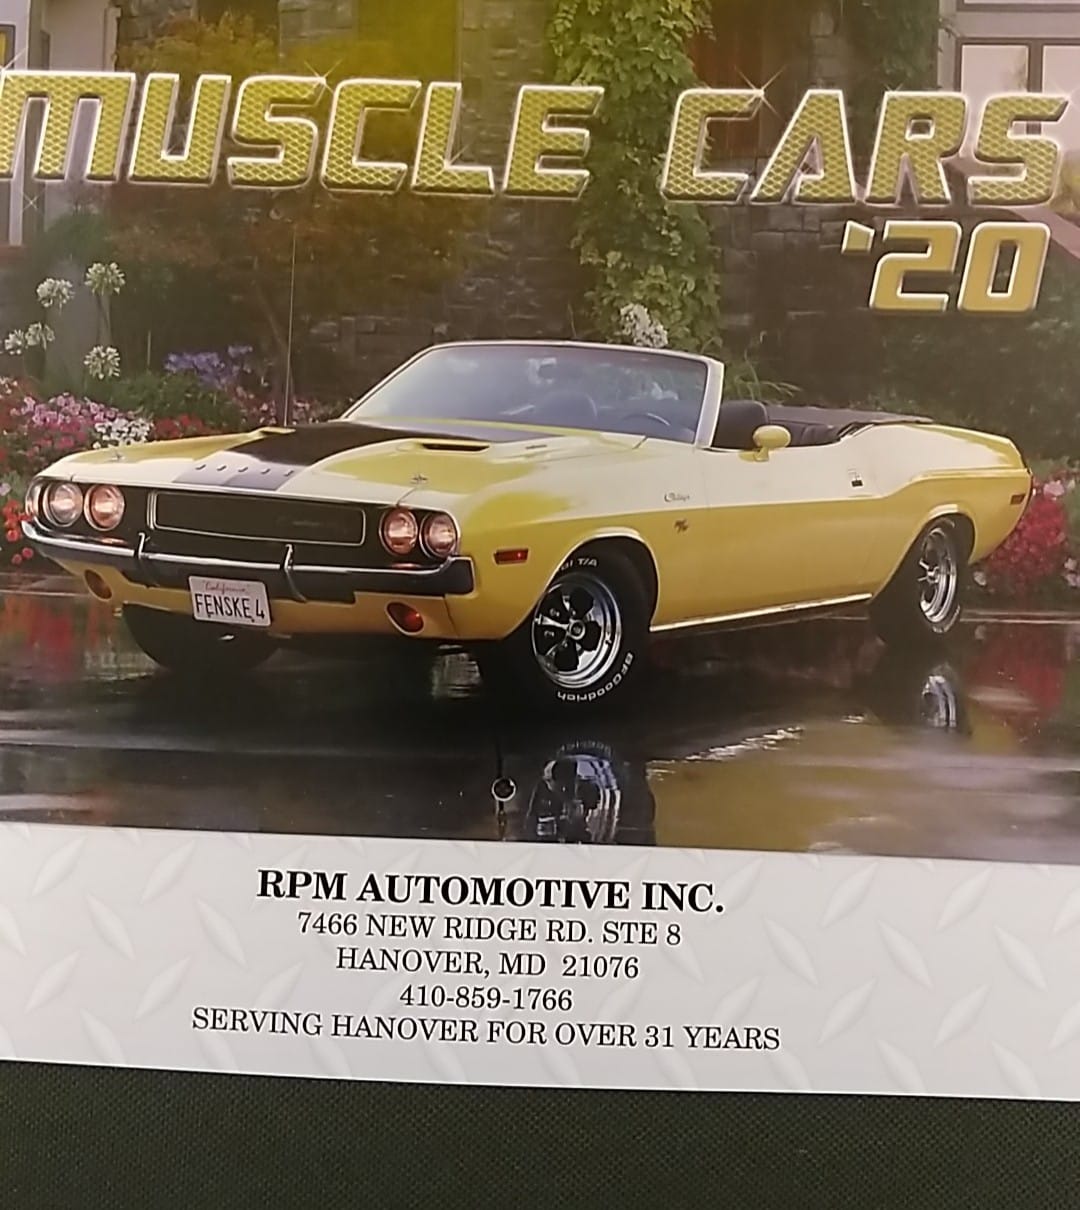 RPM Automotive Inc